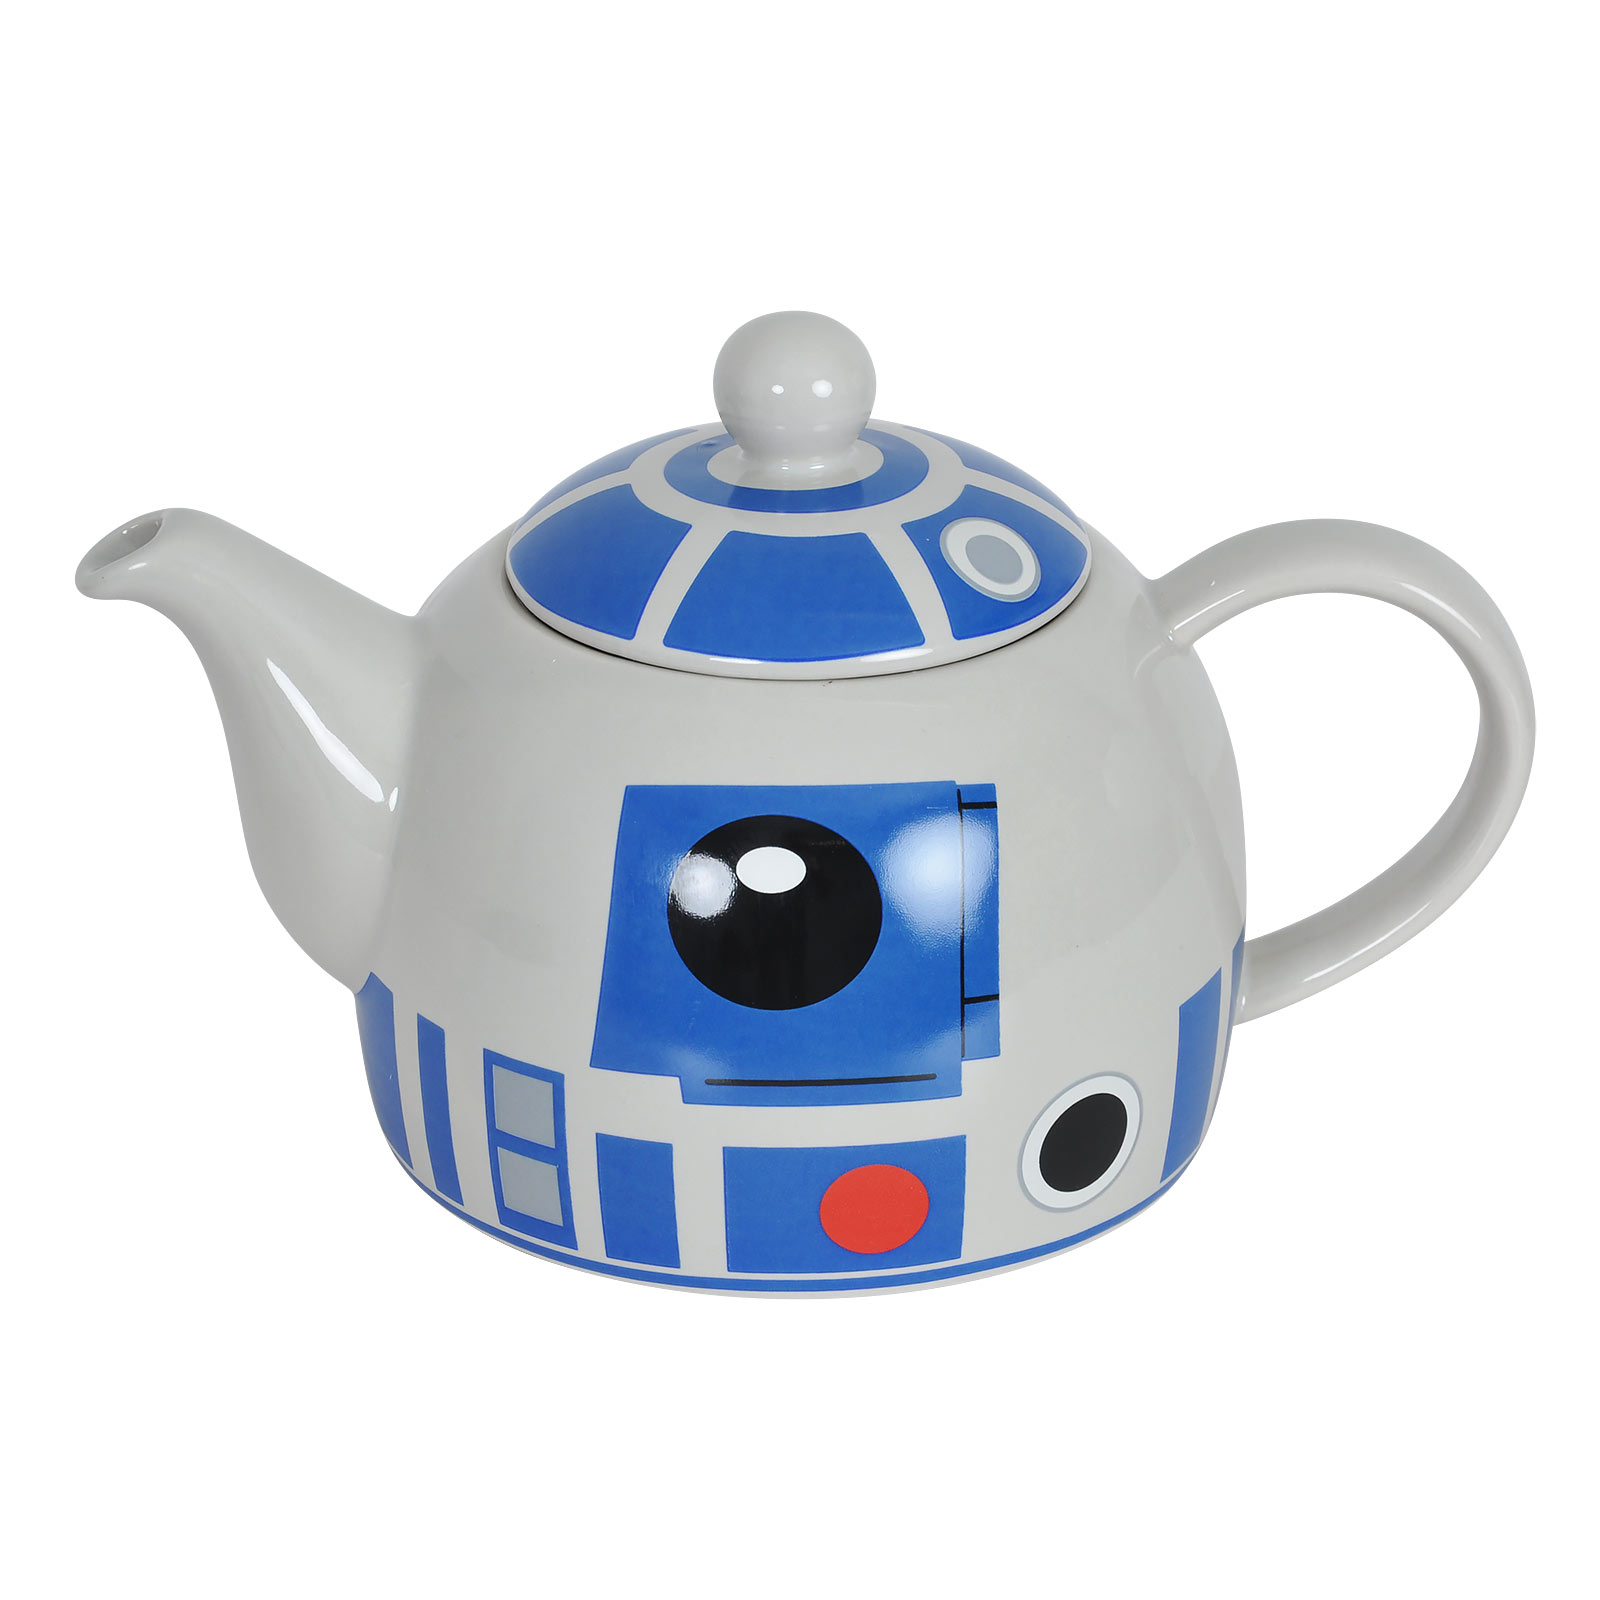 Star Wars - R2-D2 teapot